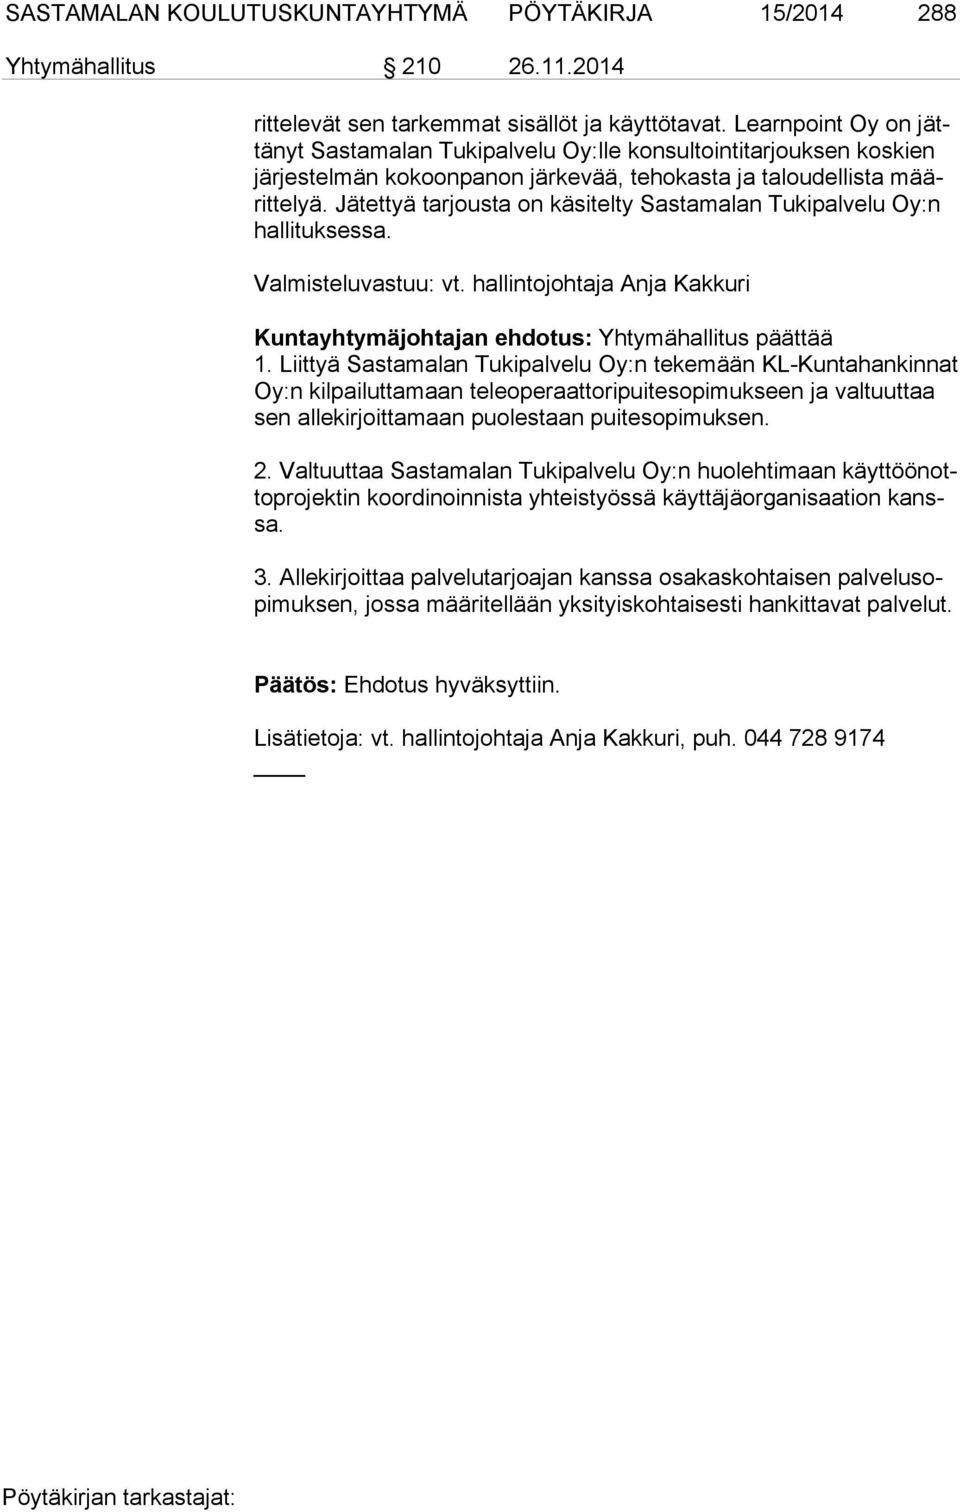 Jätettyä tarjousta on käsitelty Sastamalan Tukipalvelu Oy:n hal li tuk ses sa. Valmisteluvastuu: vt. hallintojohtaja Anja Kakkuri Kuntayhtymäjohtajan ehdotus: Yhtymähallitus päättää 1.